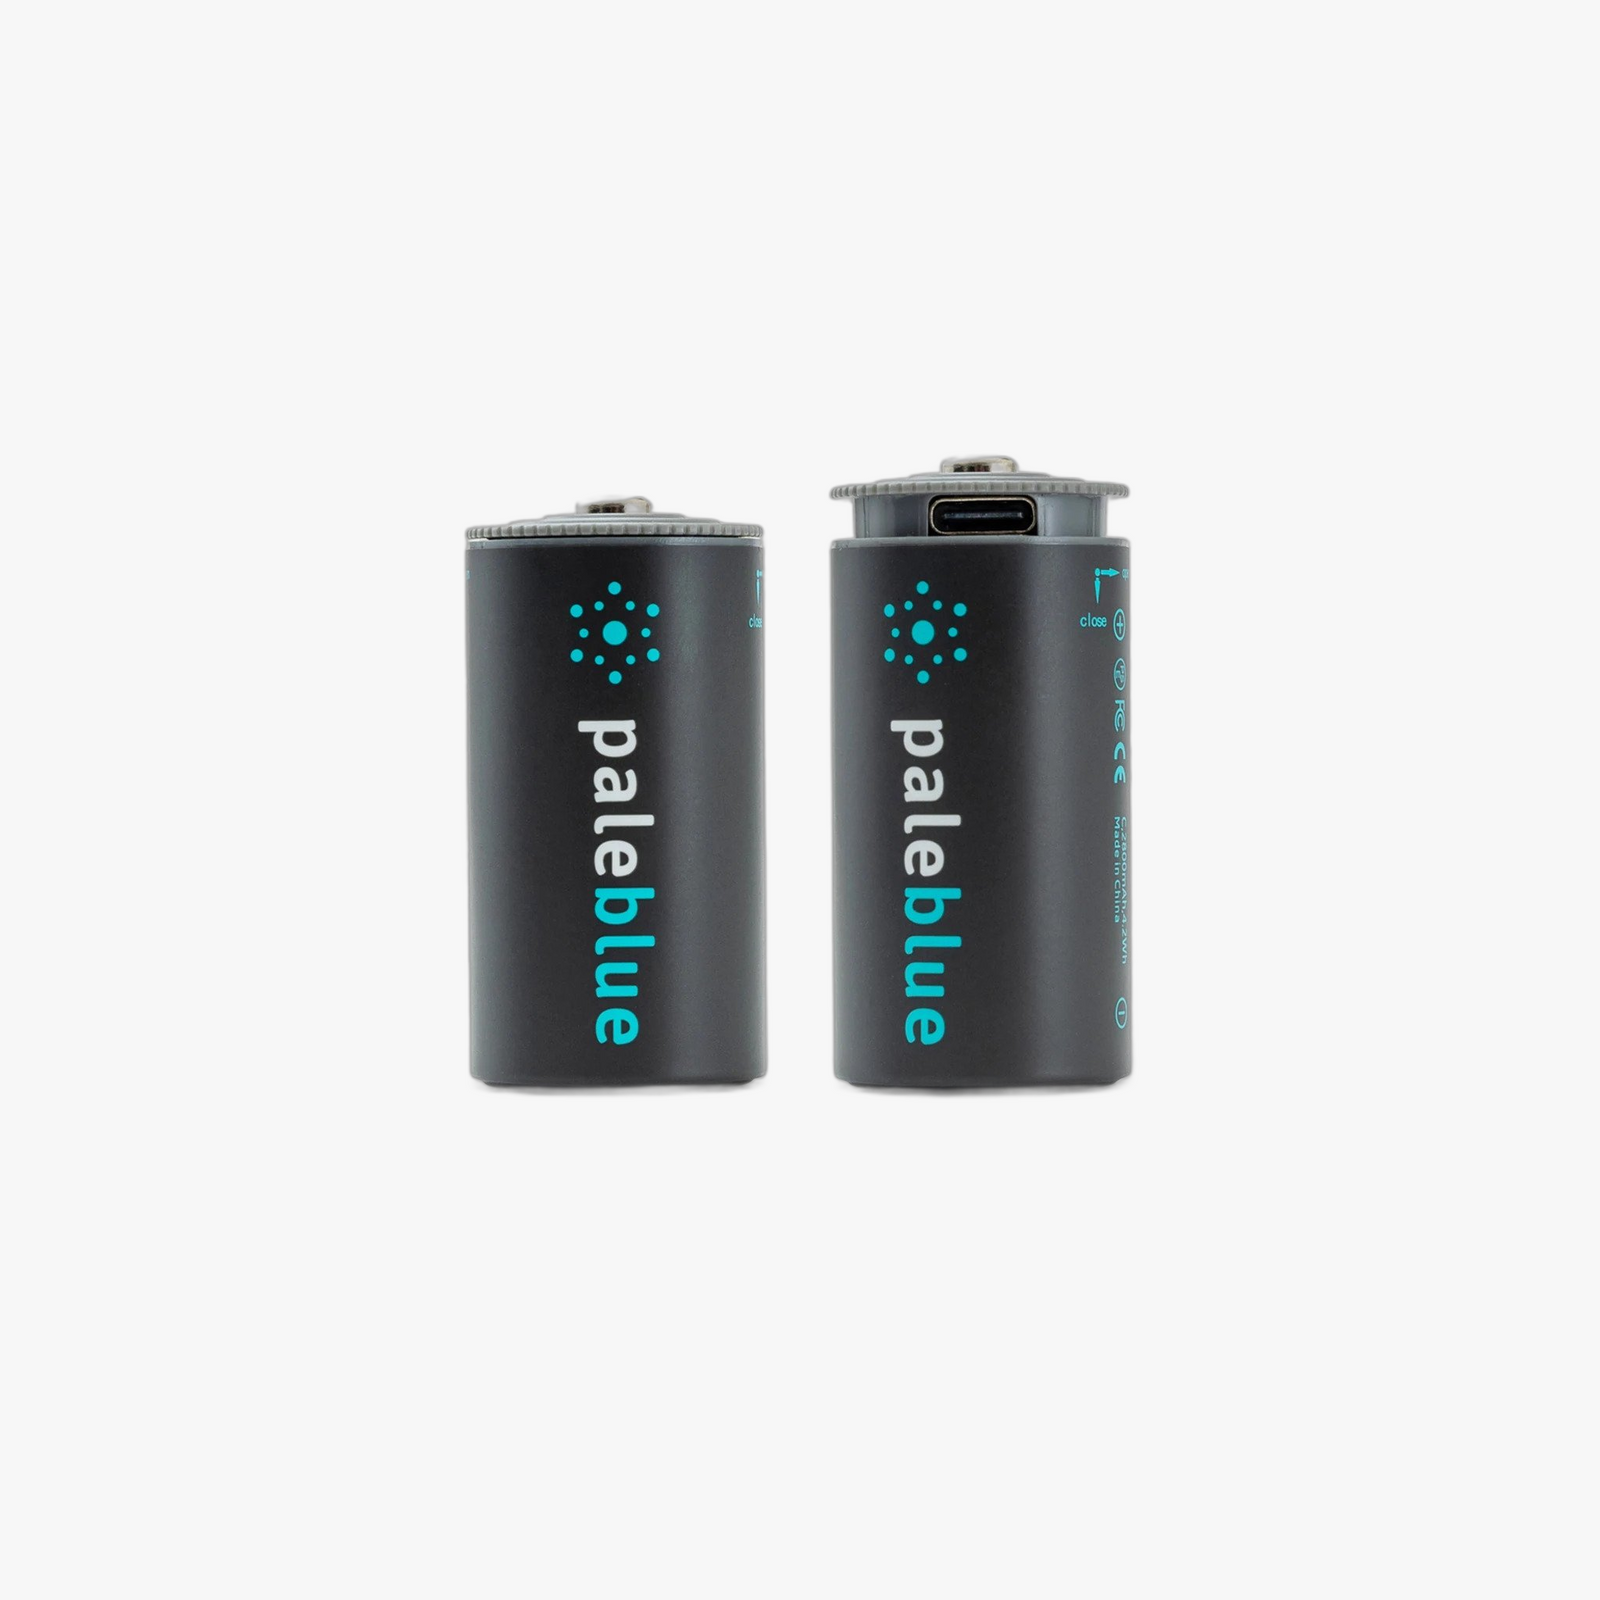 J'ai testé les piles rechargeables par USB de la marque Pale Blue. –  DoubleGeek